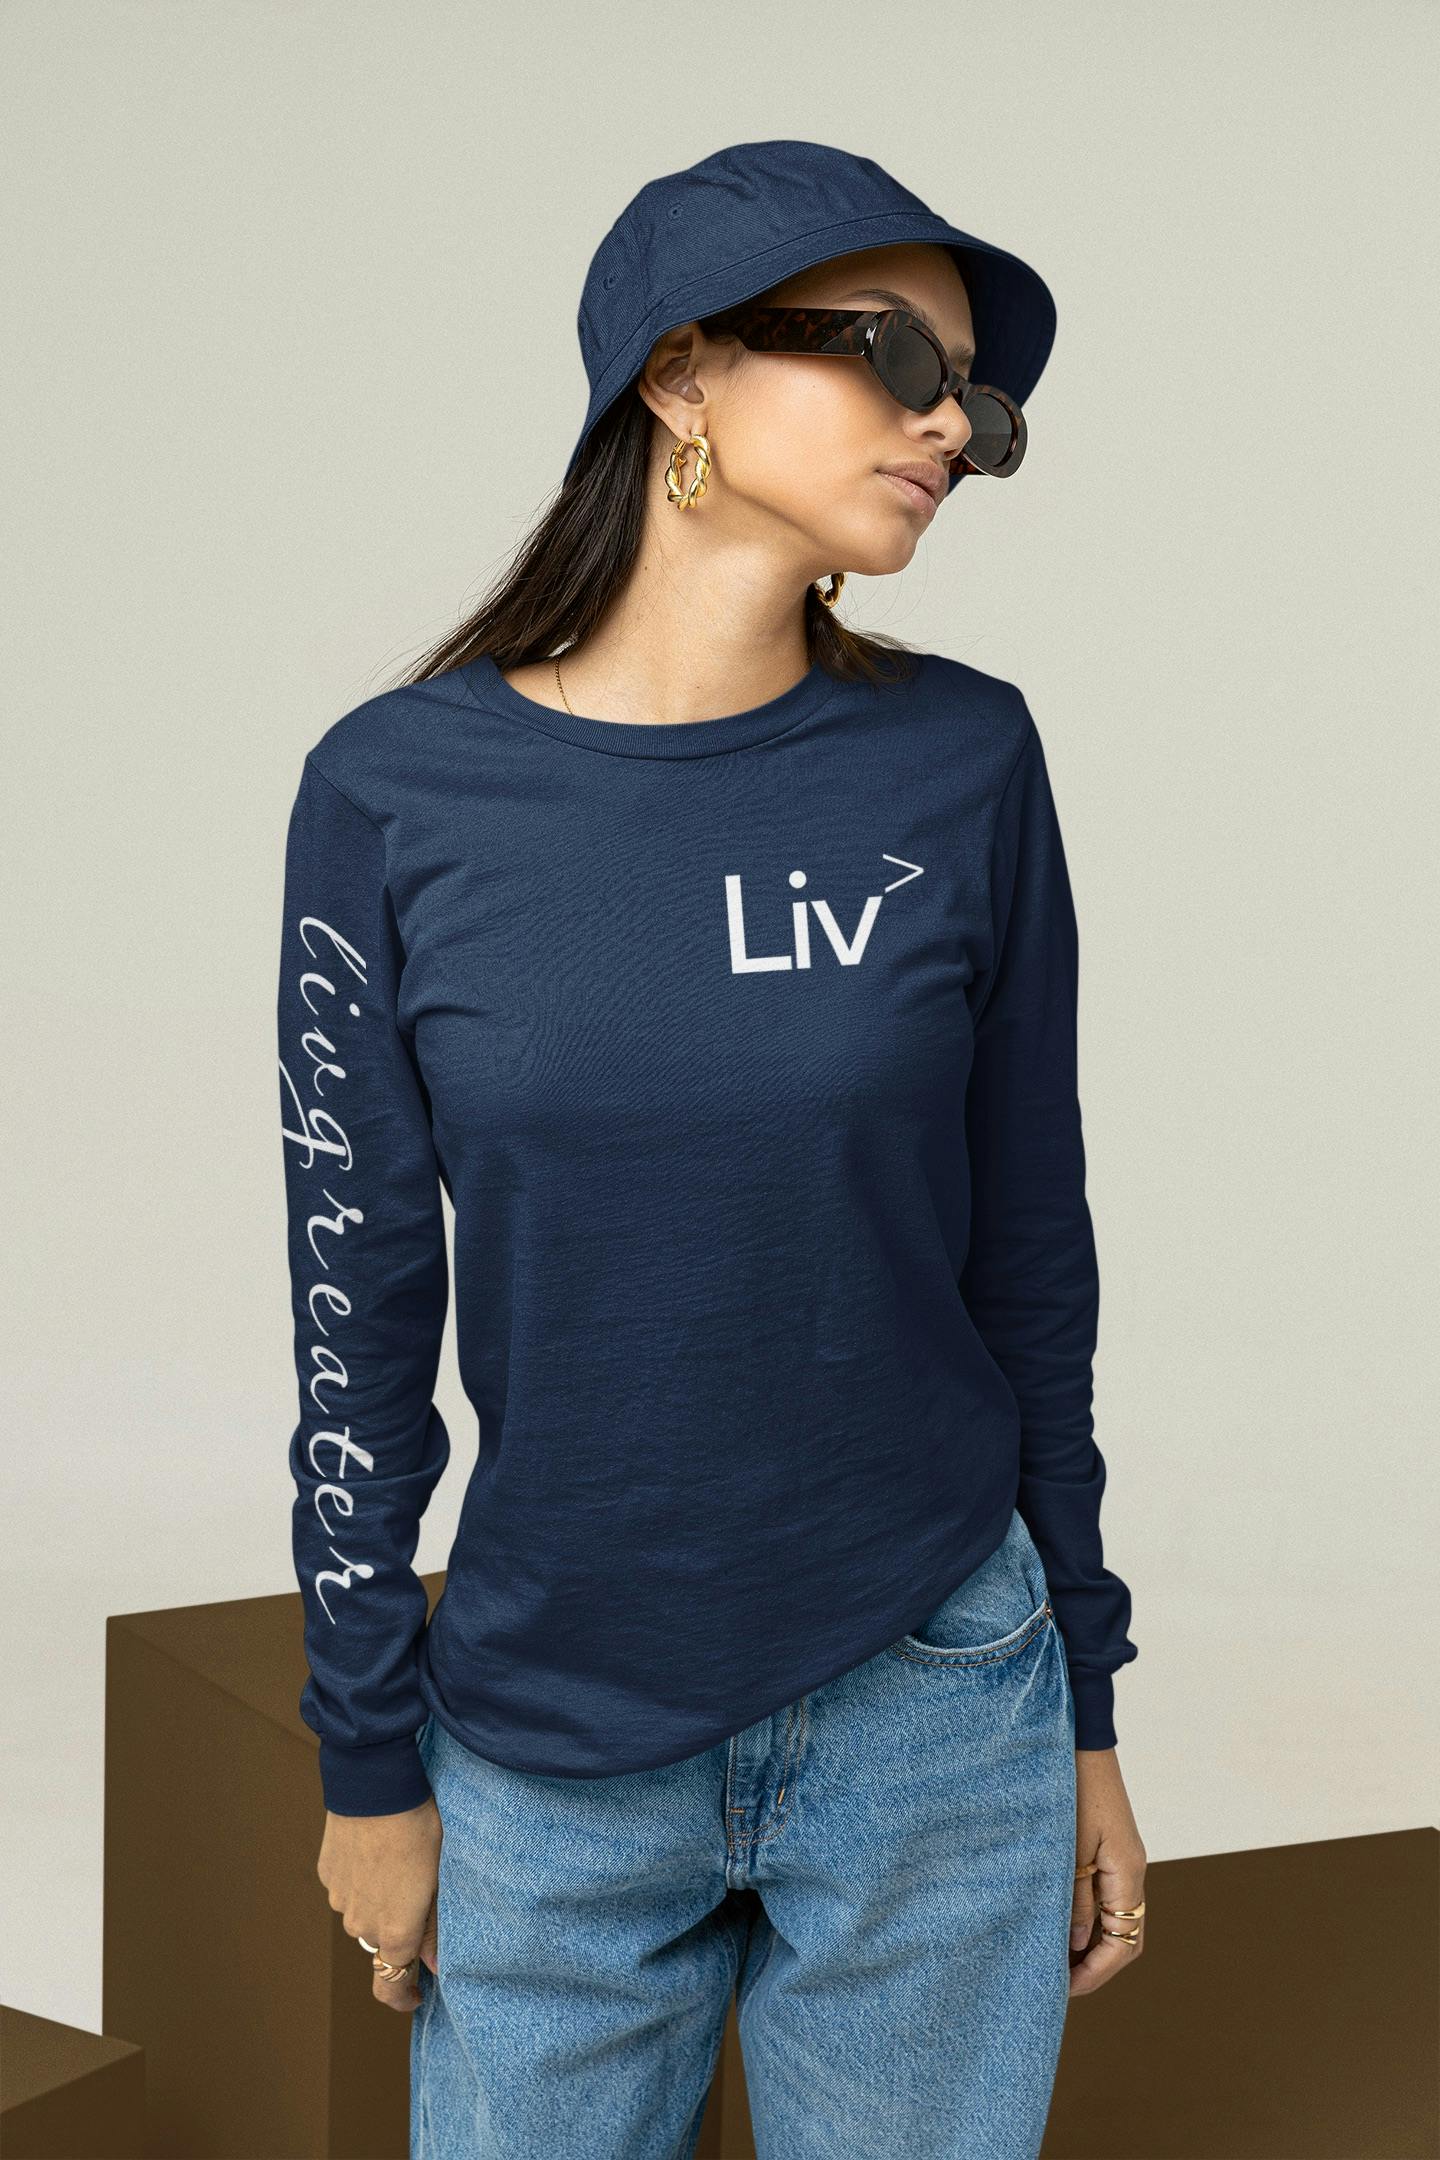 XL Women Navy LivGreater T Shirt Long Sleeve